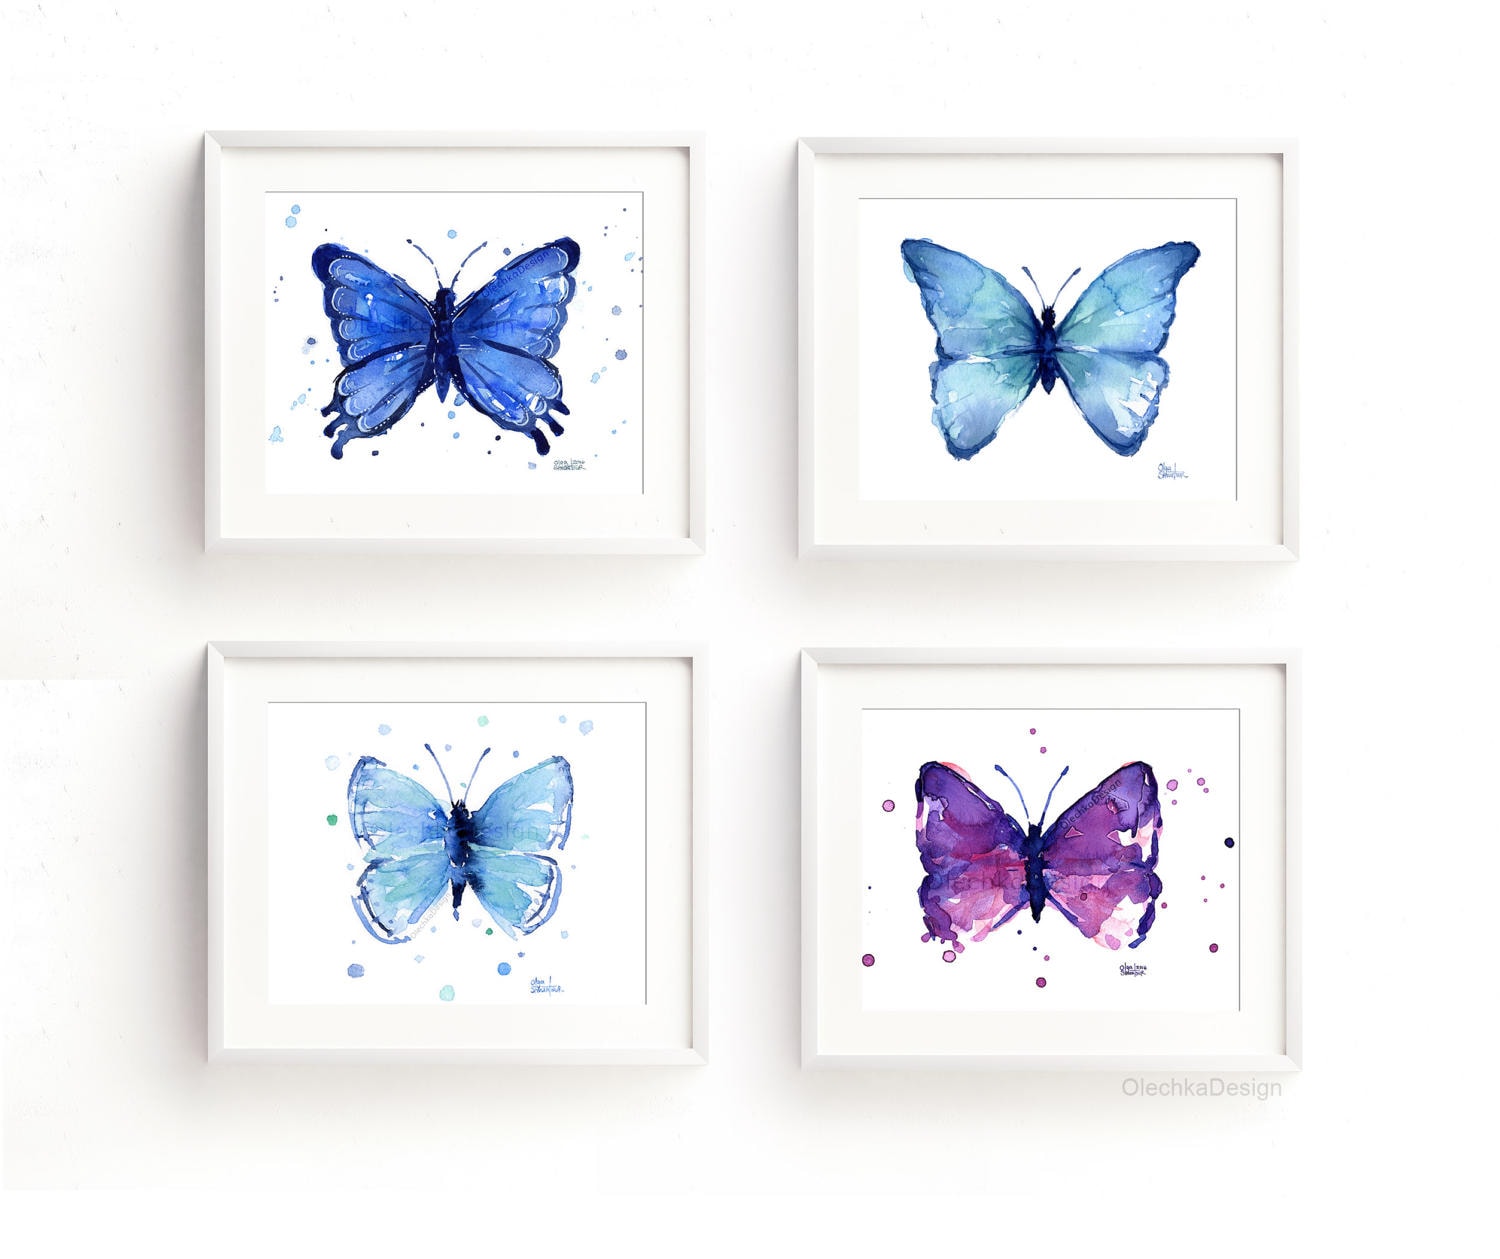 Gift For Her Blue Butterfly Print Blue Morpho Butterfly Butterfly Artwork Insect Print Blue Wall Art Butterfly Gifts Butterfly Print